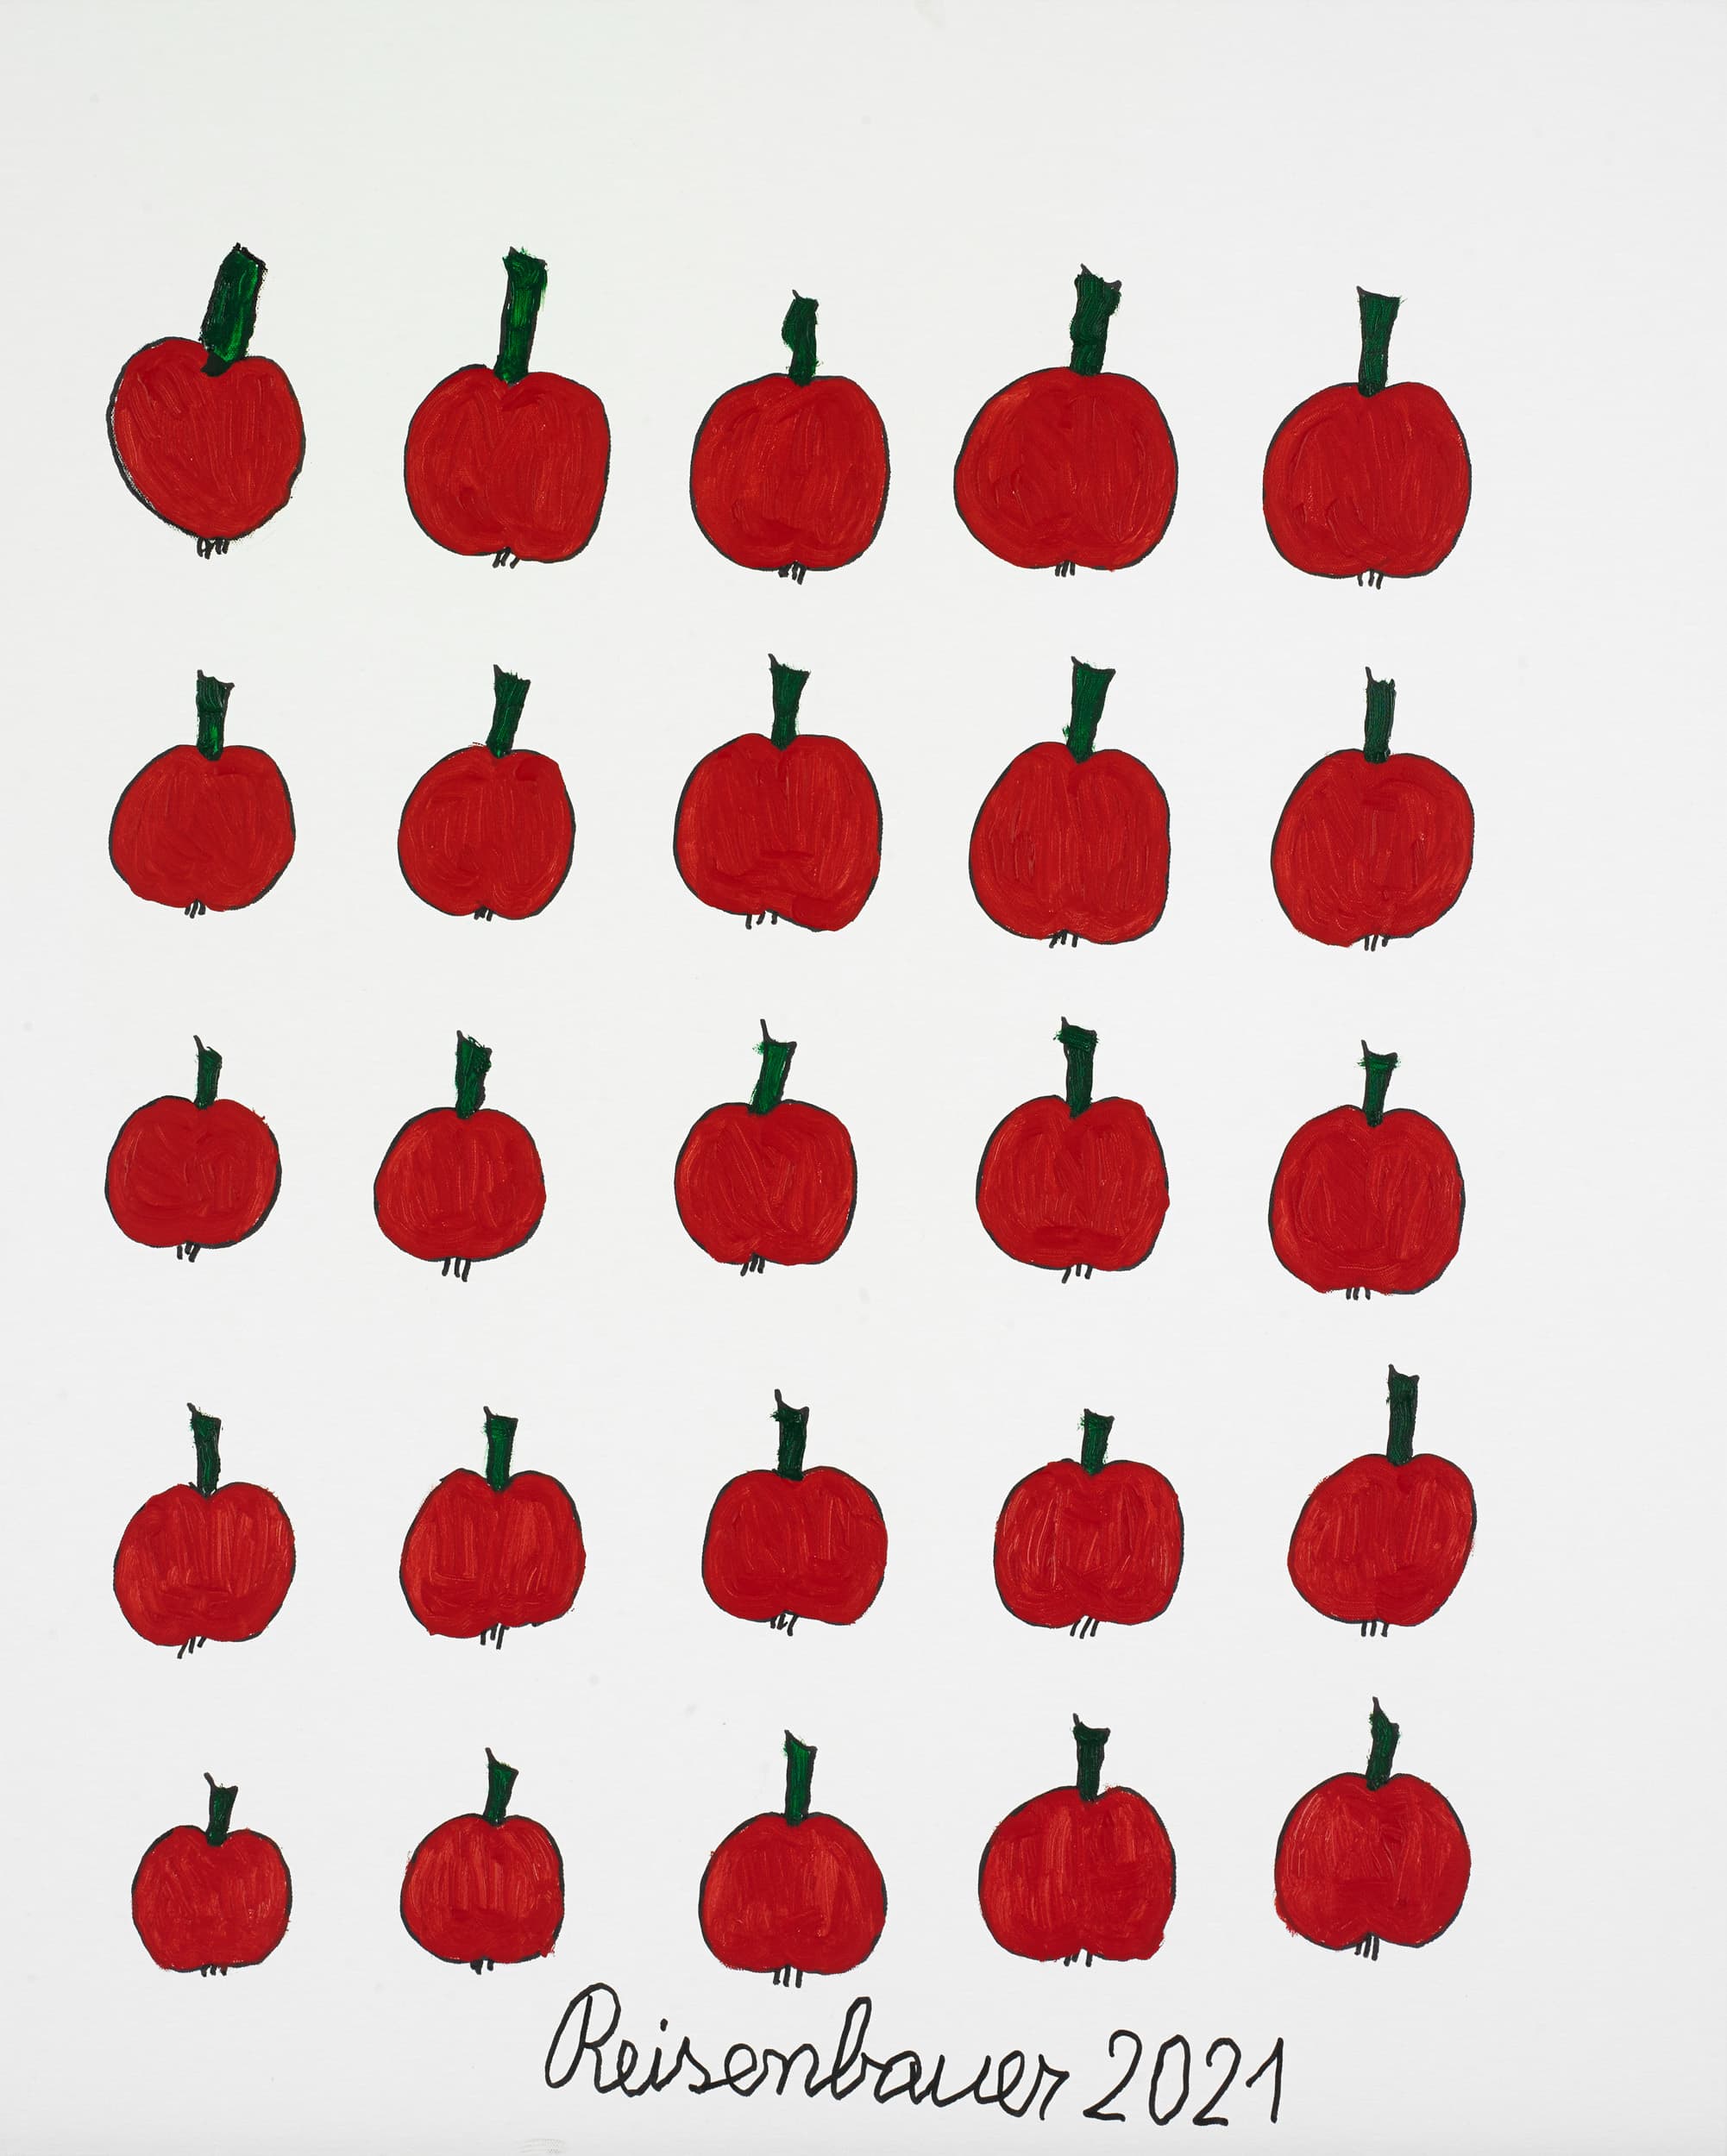 reisenbauer heinrich - Äpfel / Apples